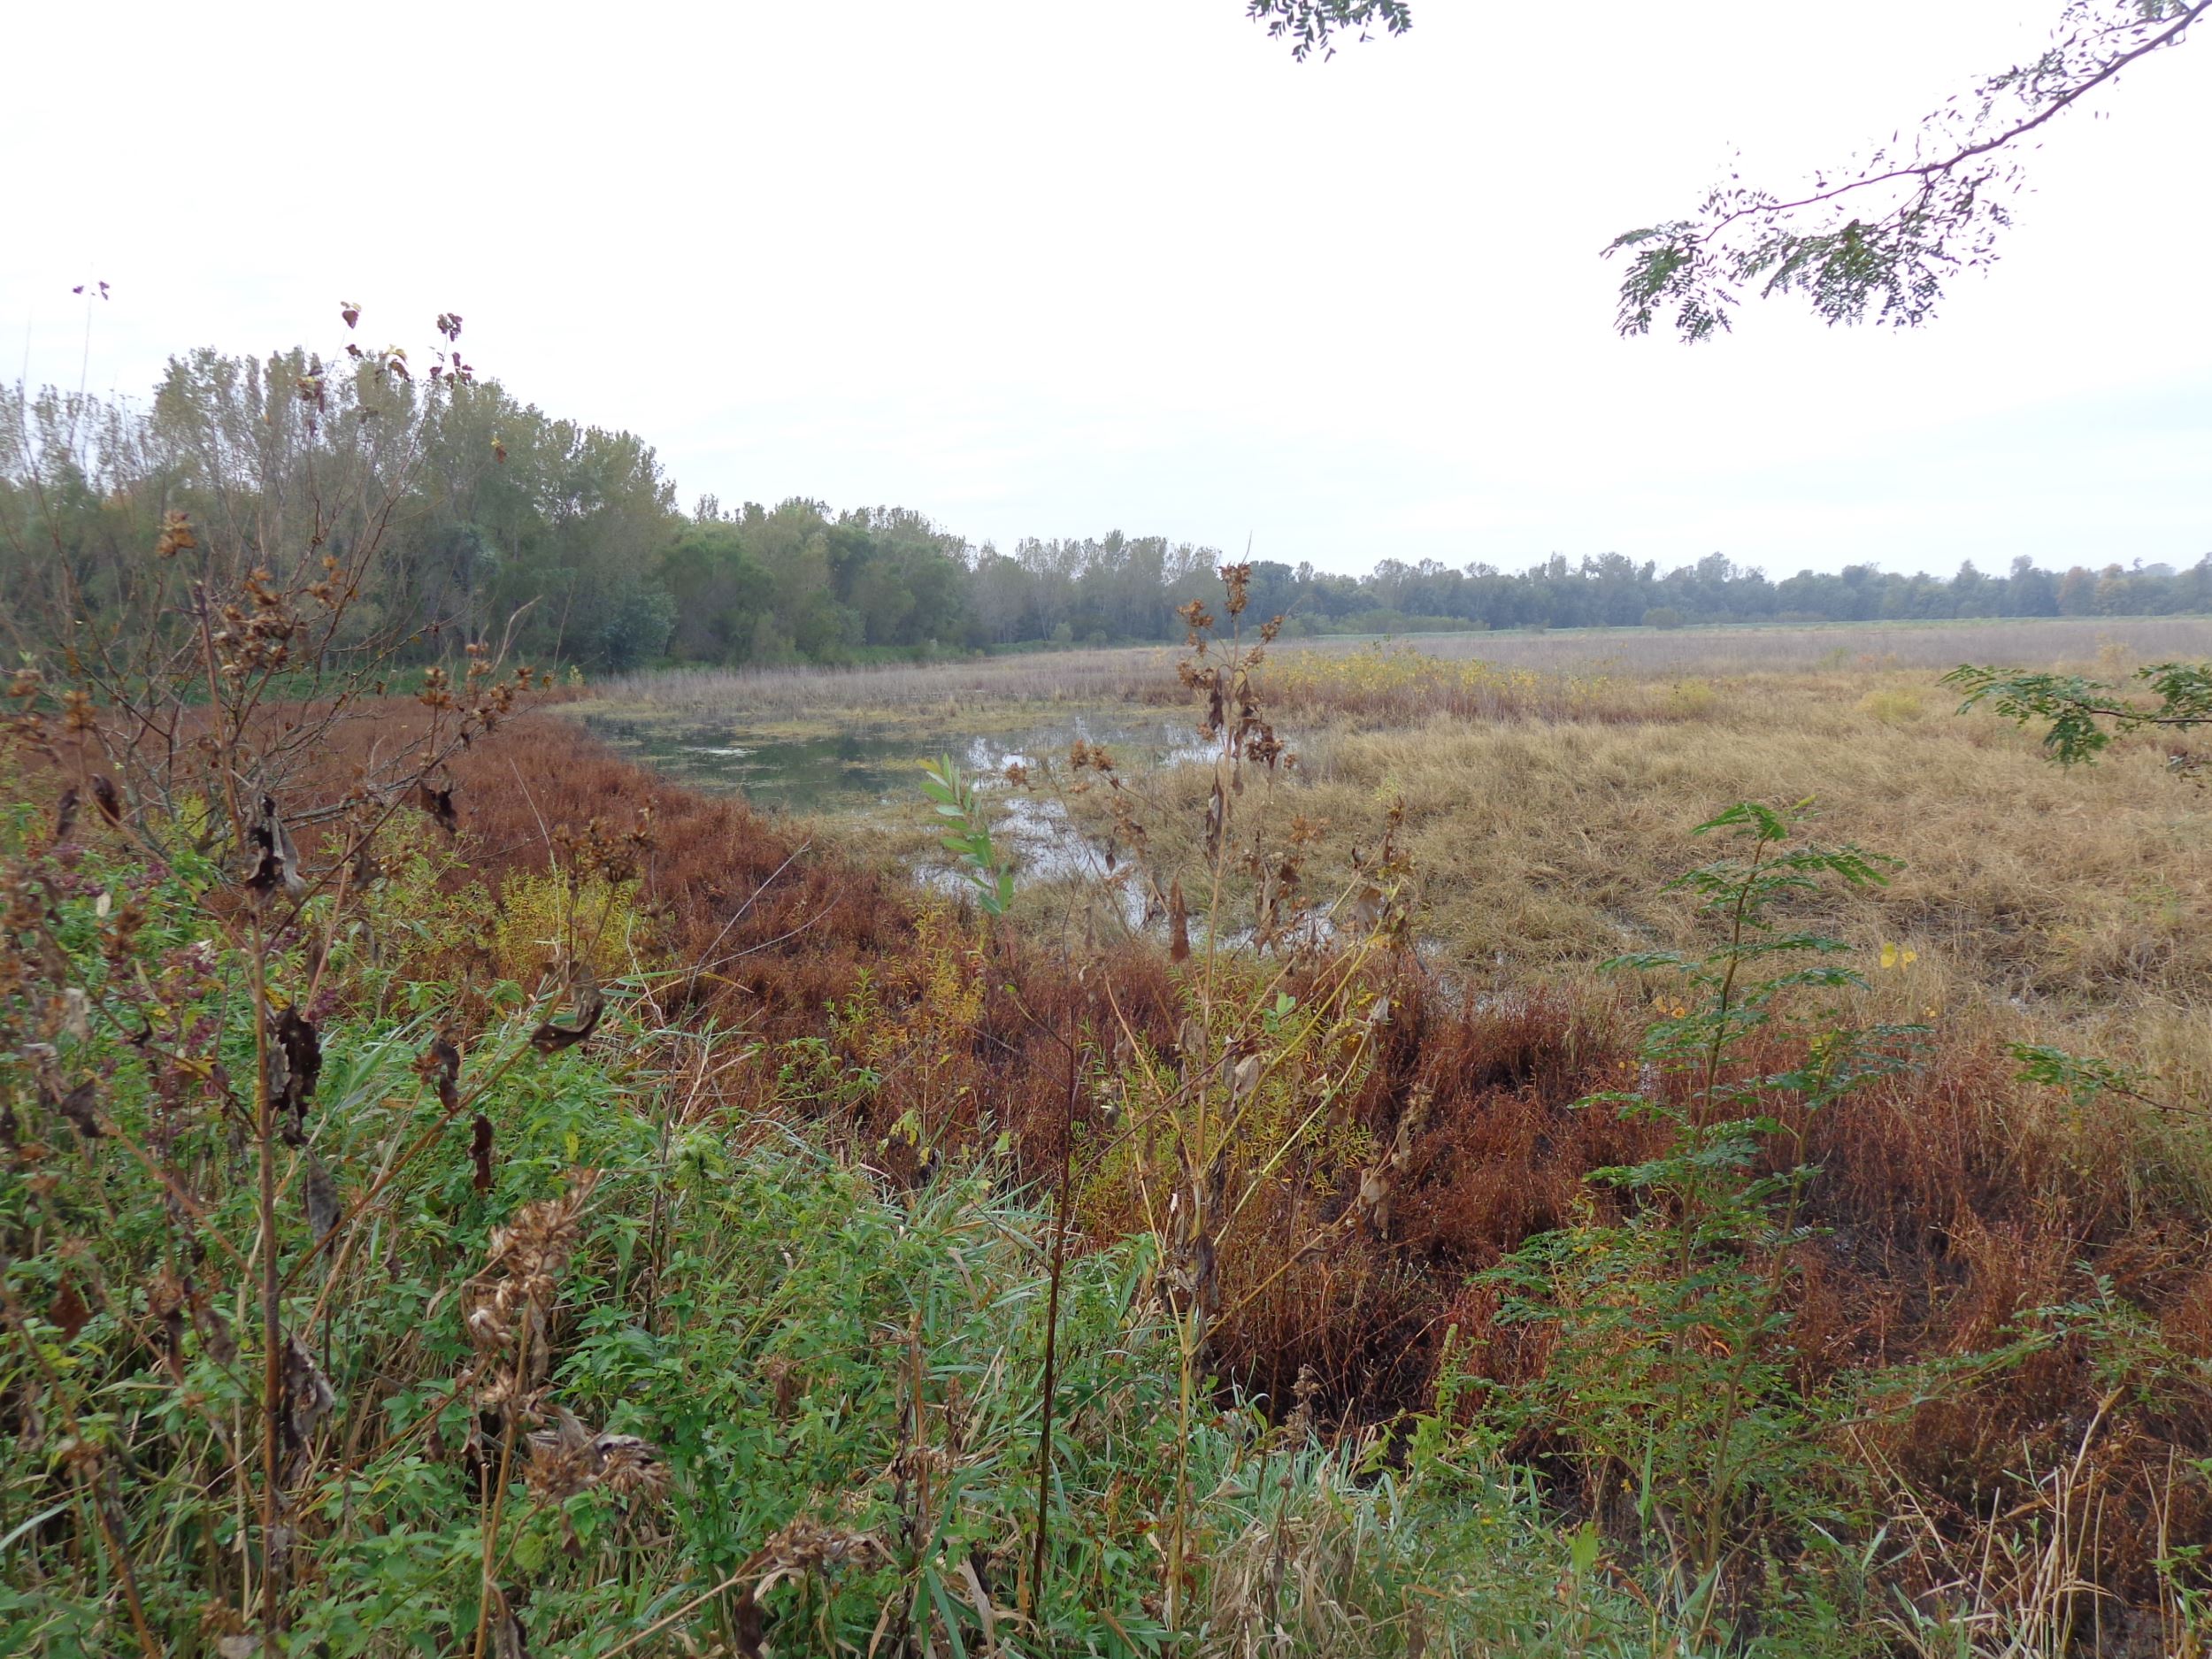 New public hunting area in Mahaska County